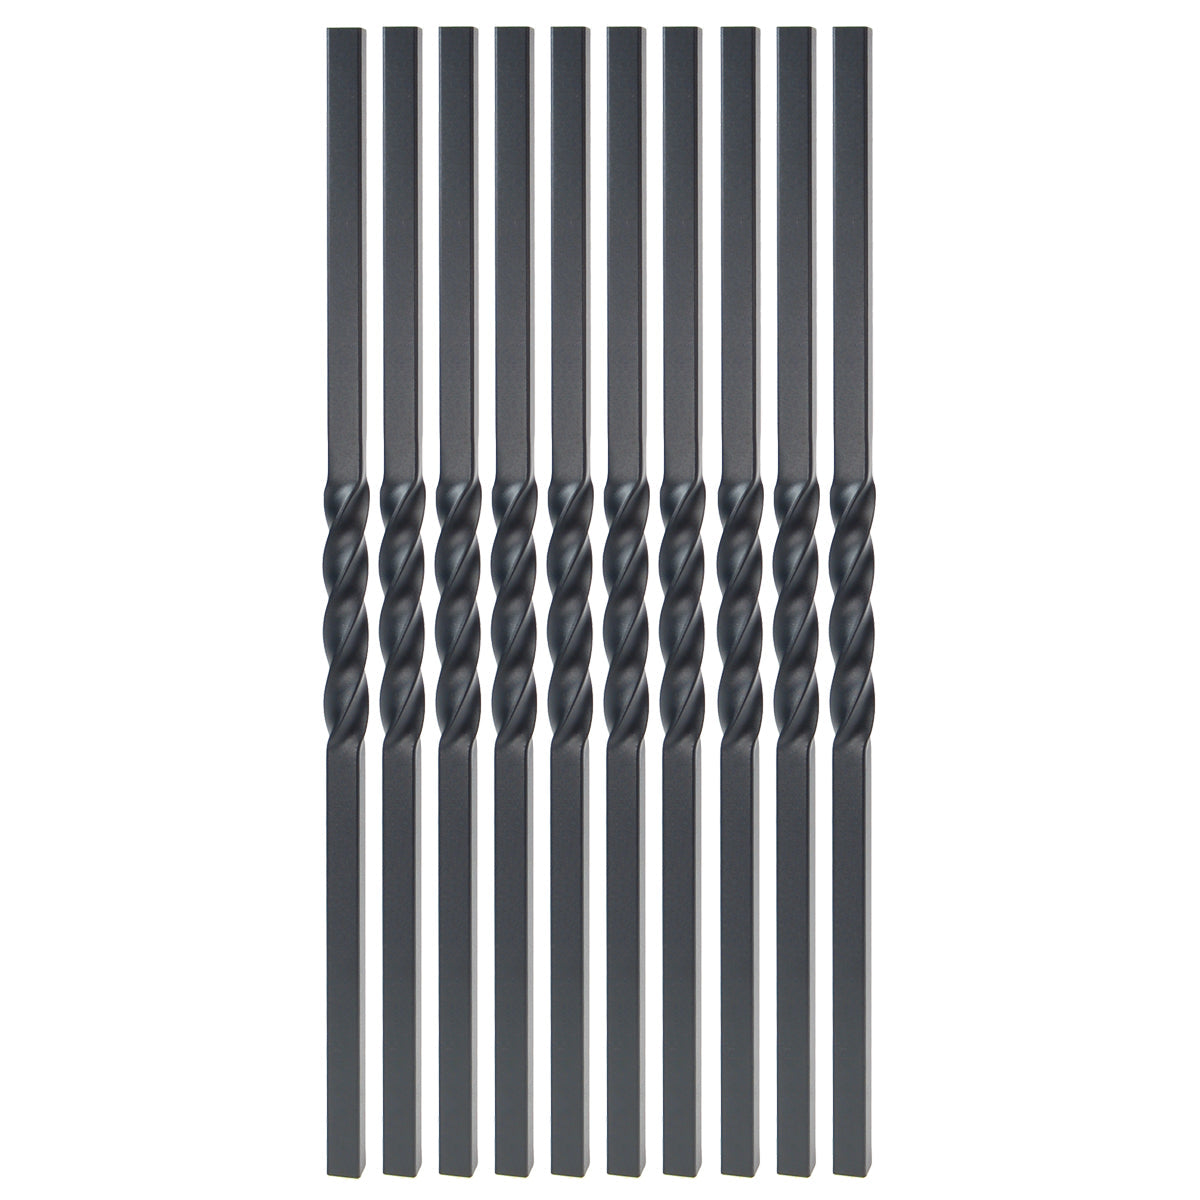 Baluster - MEGA STEEL BALUSTER TWIST DESIGN Black Sand 26"  (BOX 10)